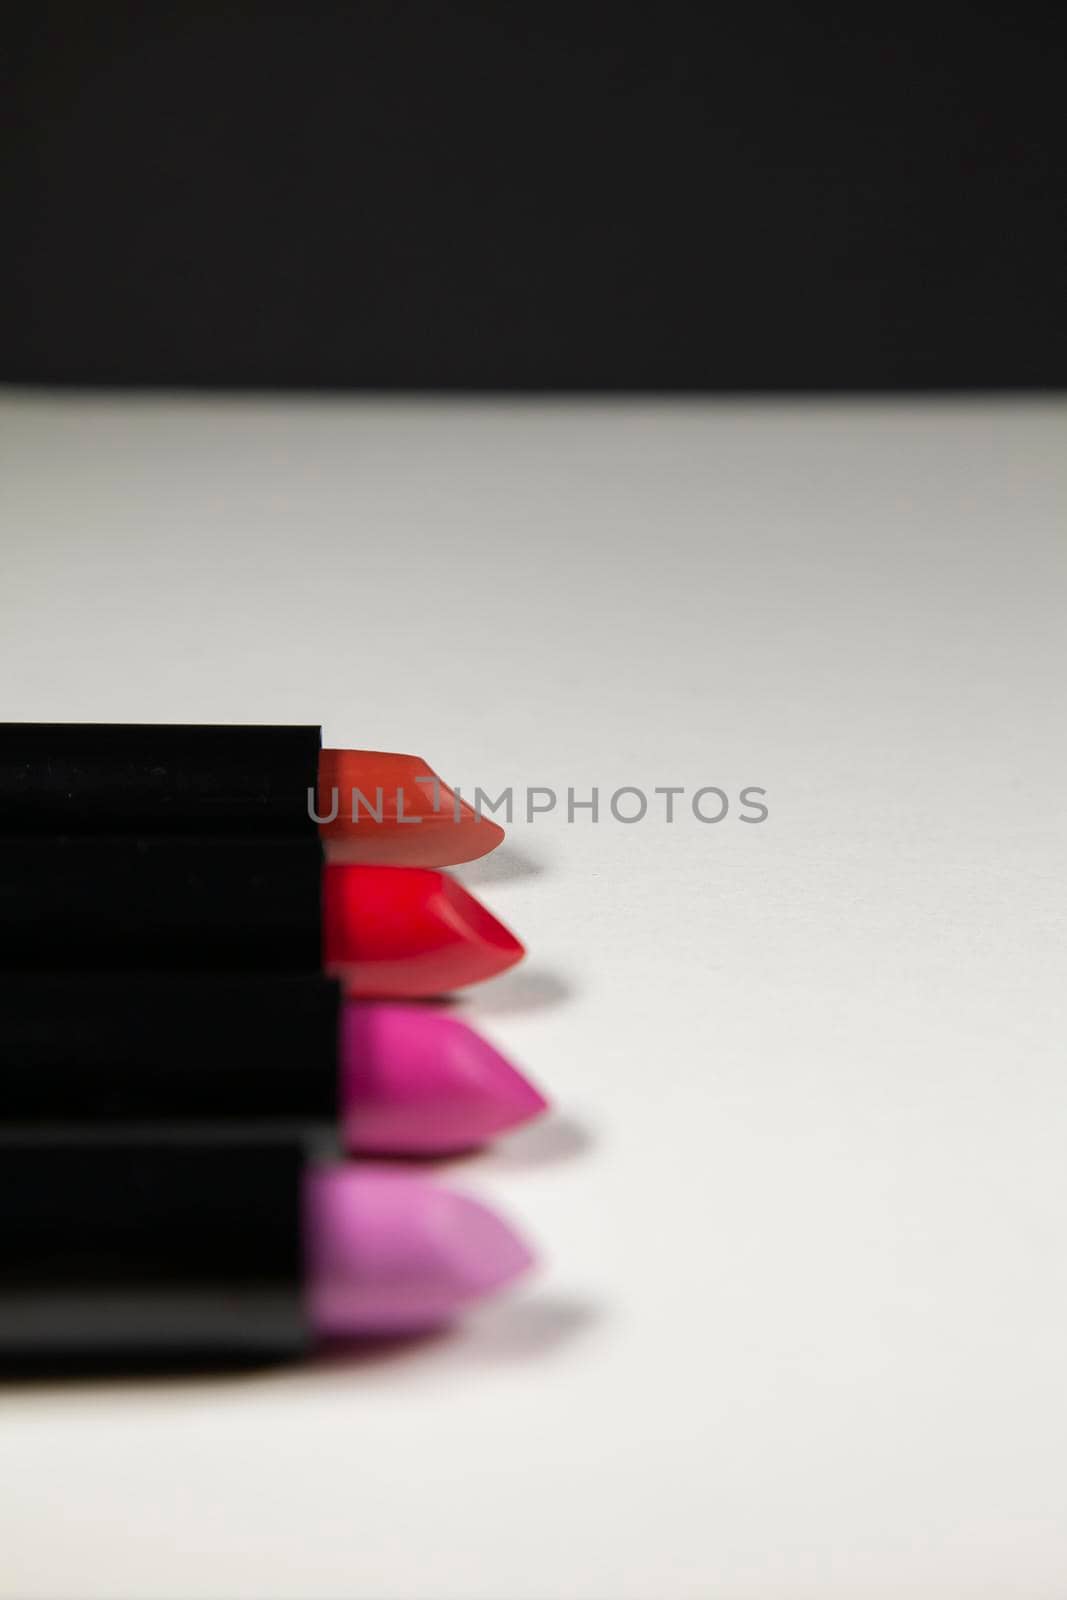 Four Lipsticks by tornado98